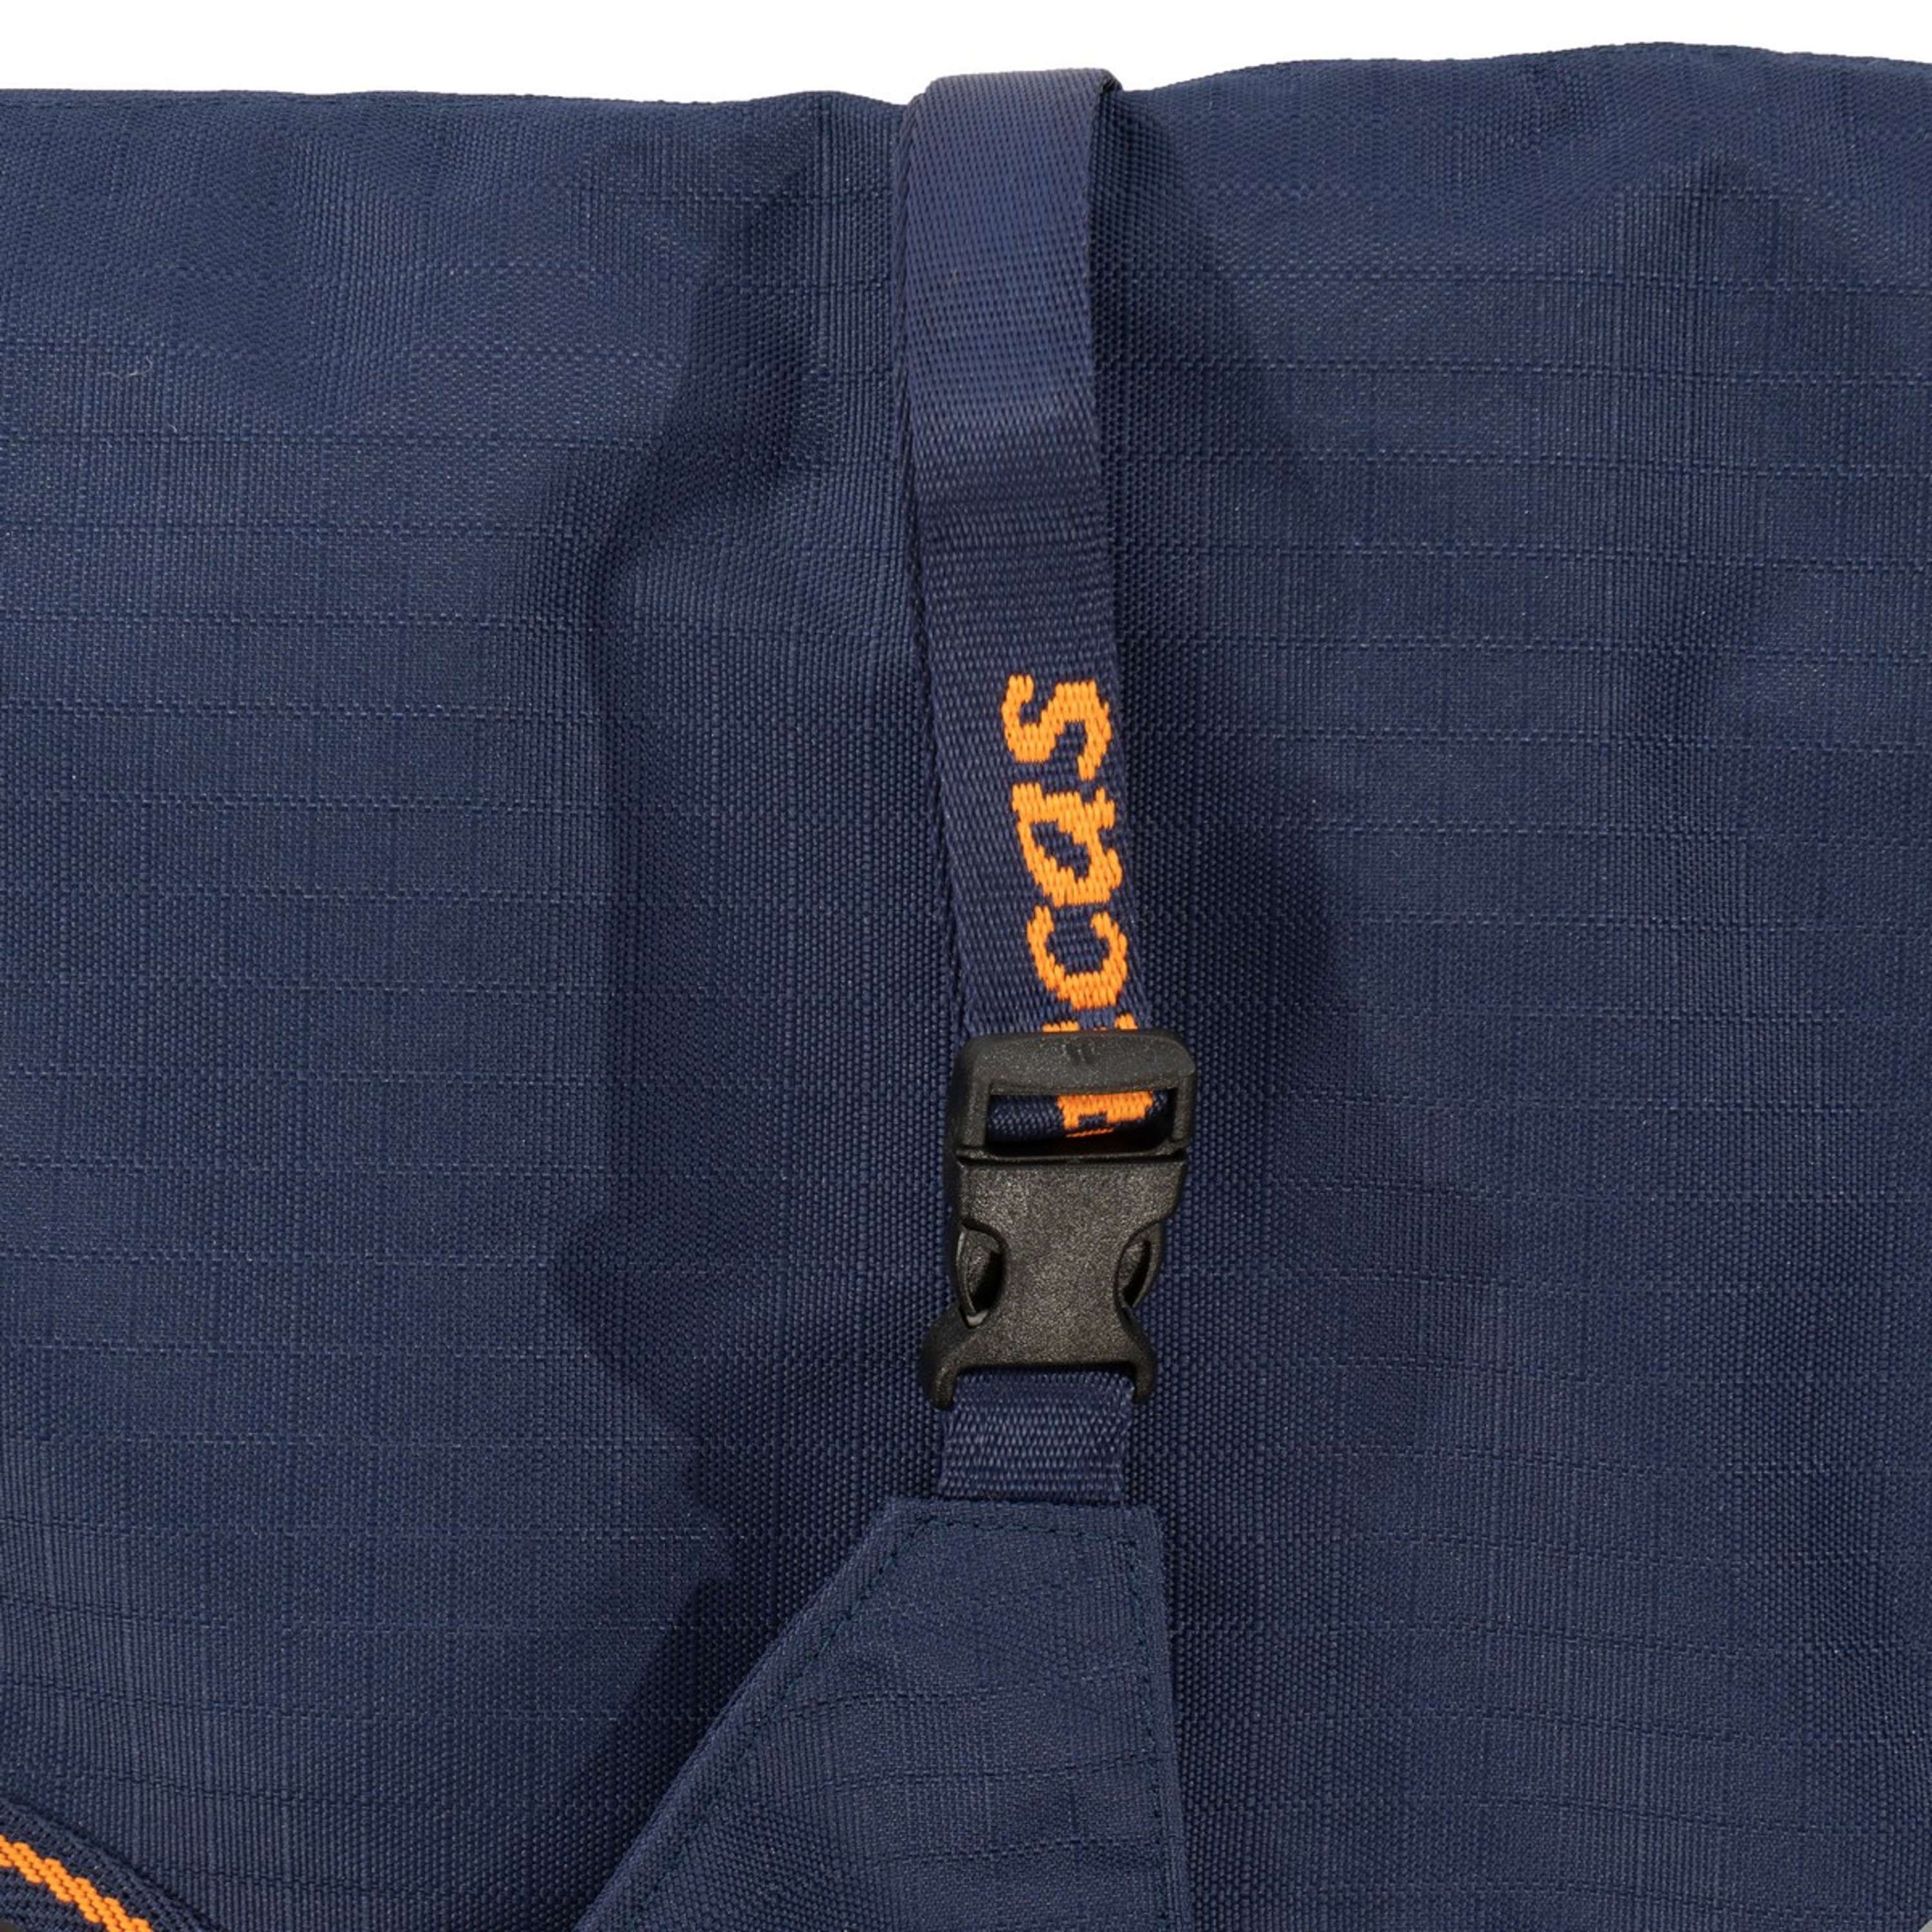 Bucas Couverture Thérapeutique pour Chien 150g Bleu Marine/Orange